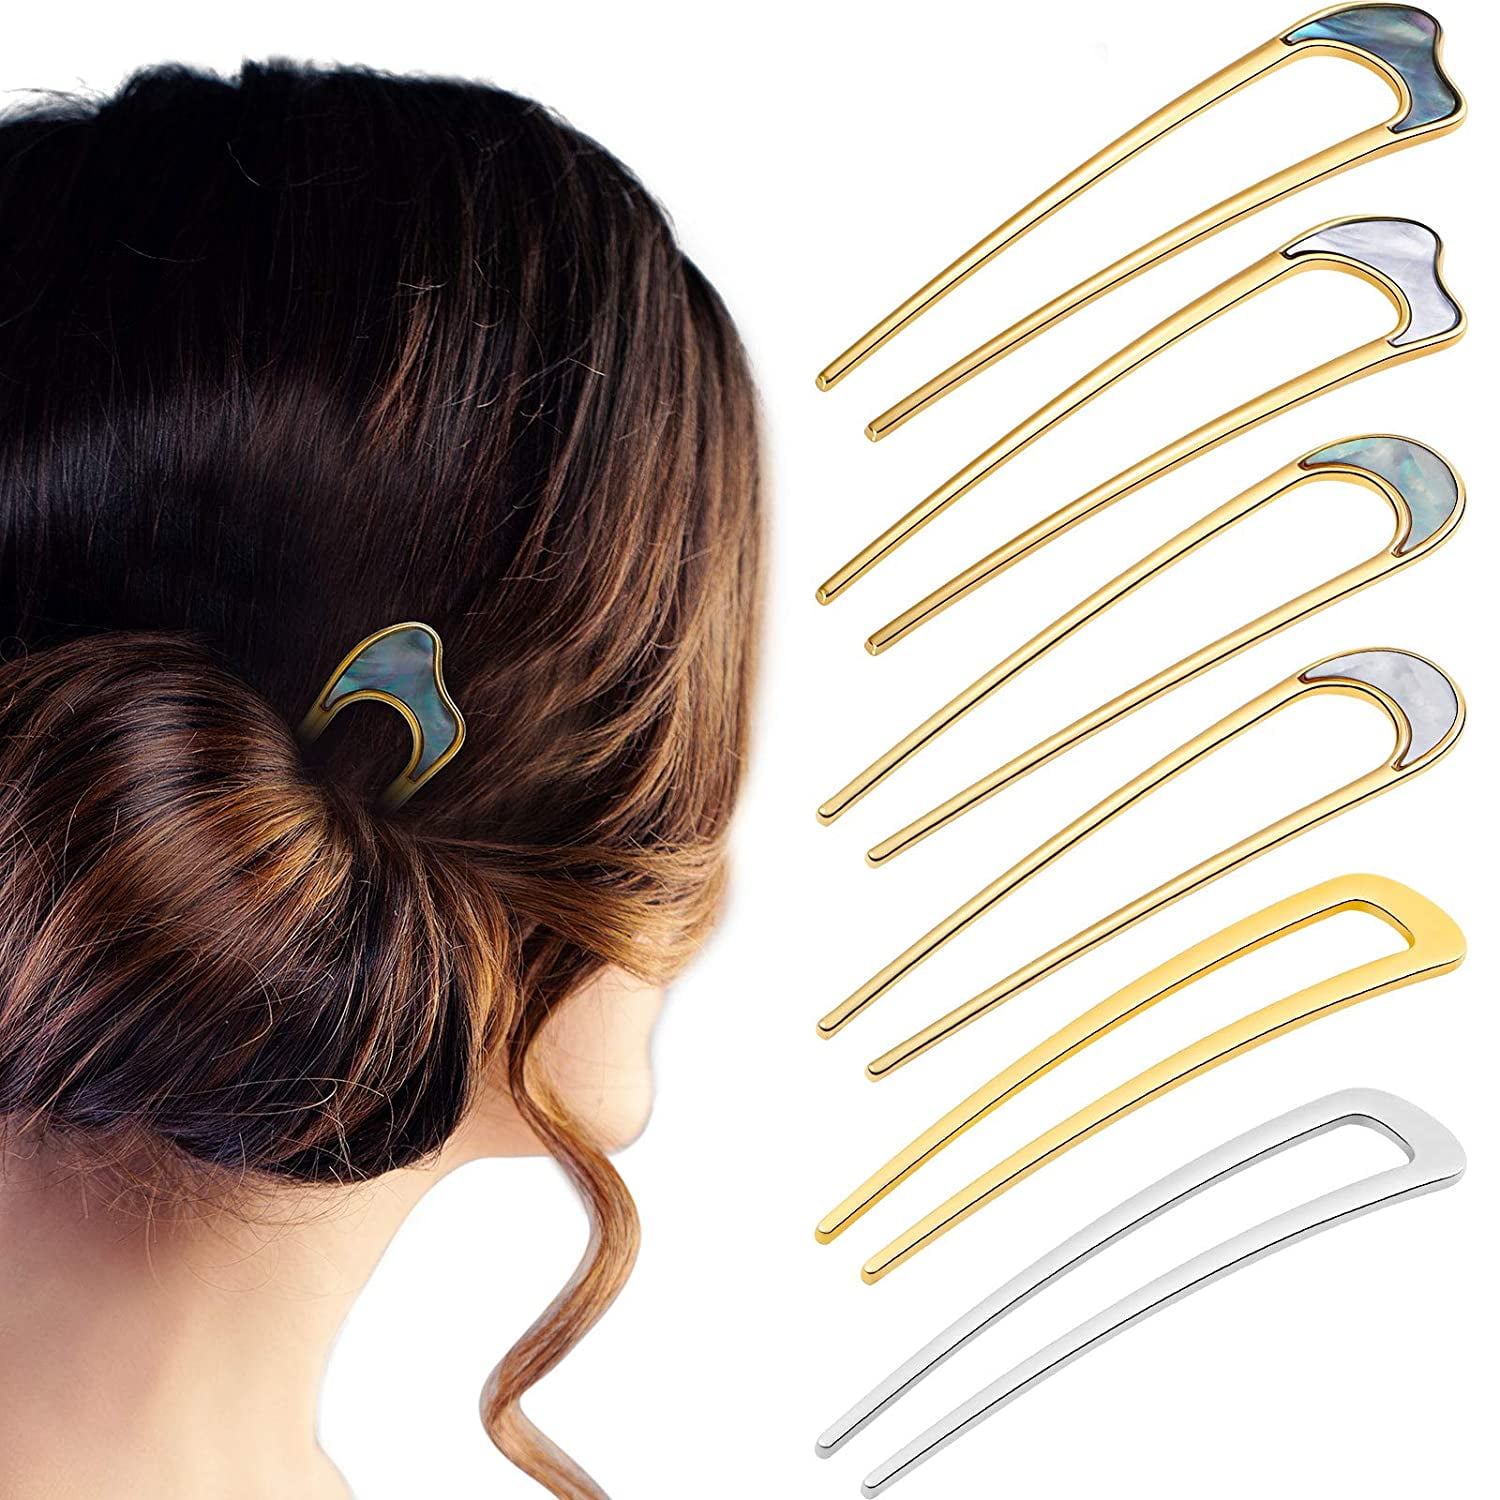 Chic Pin Shape Hair Clip Simple Metal Hairpins Hair Stick Women Hair AccessoryTO 